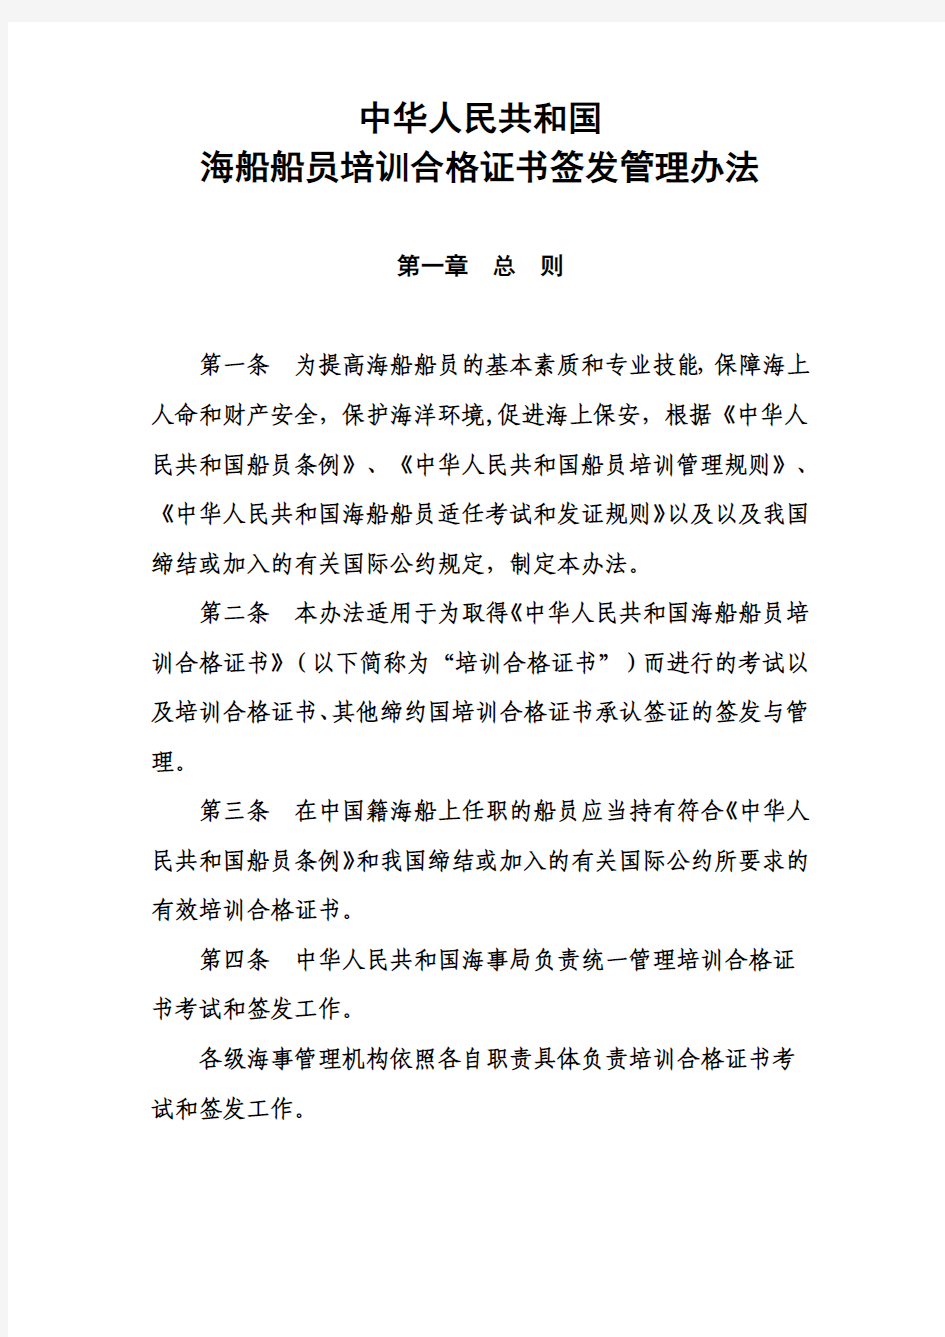 中华人民共和国海船船员培训合格证书签发管理办法